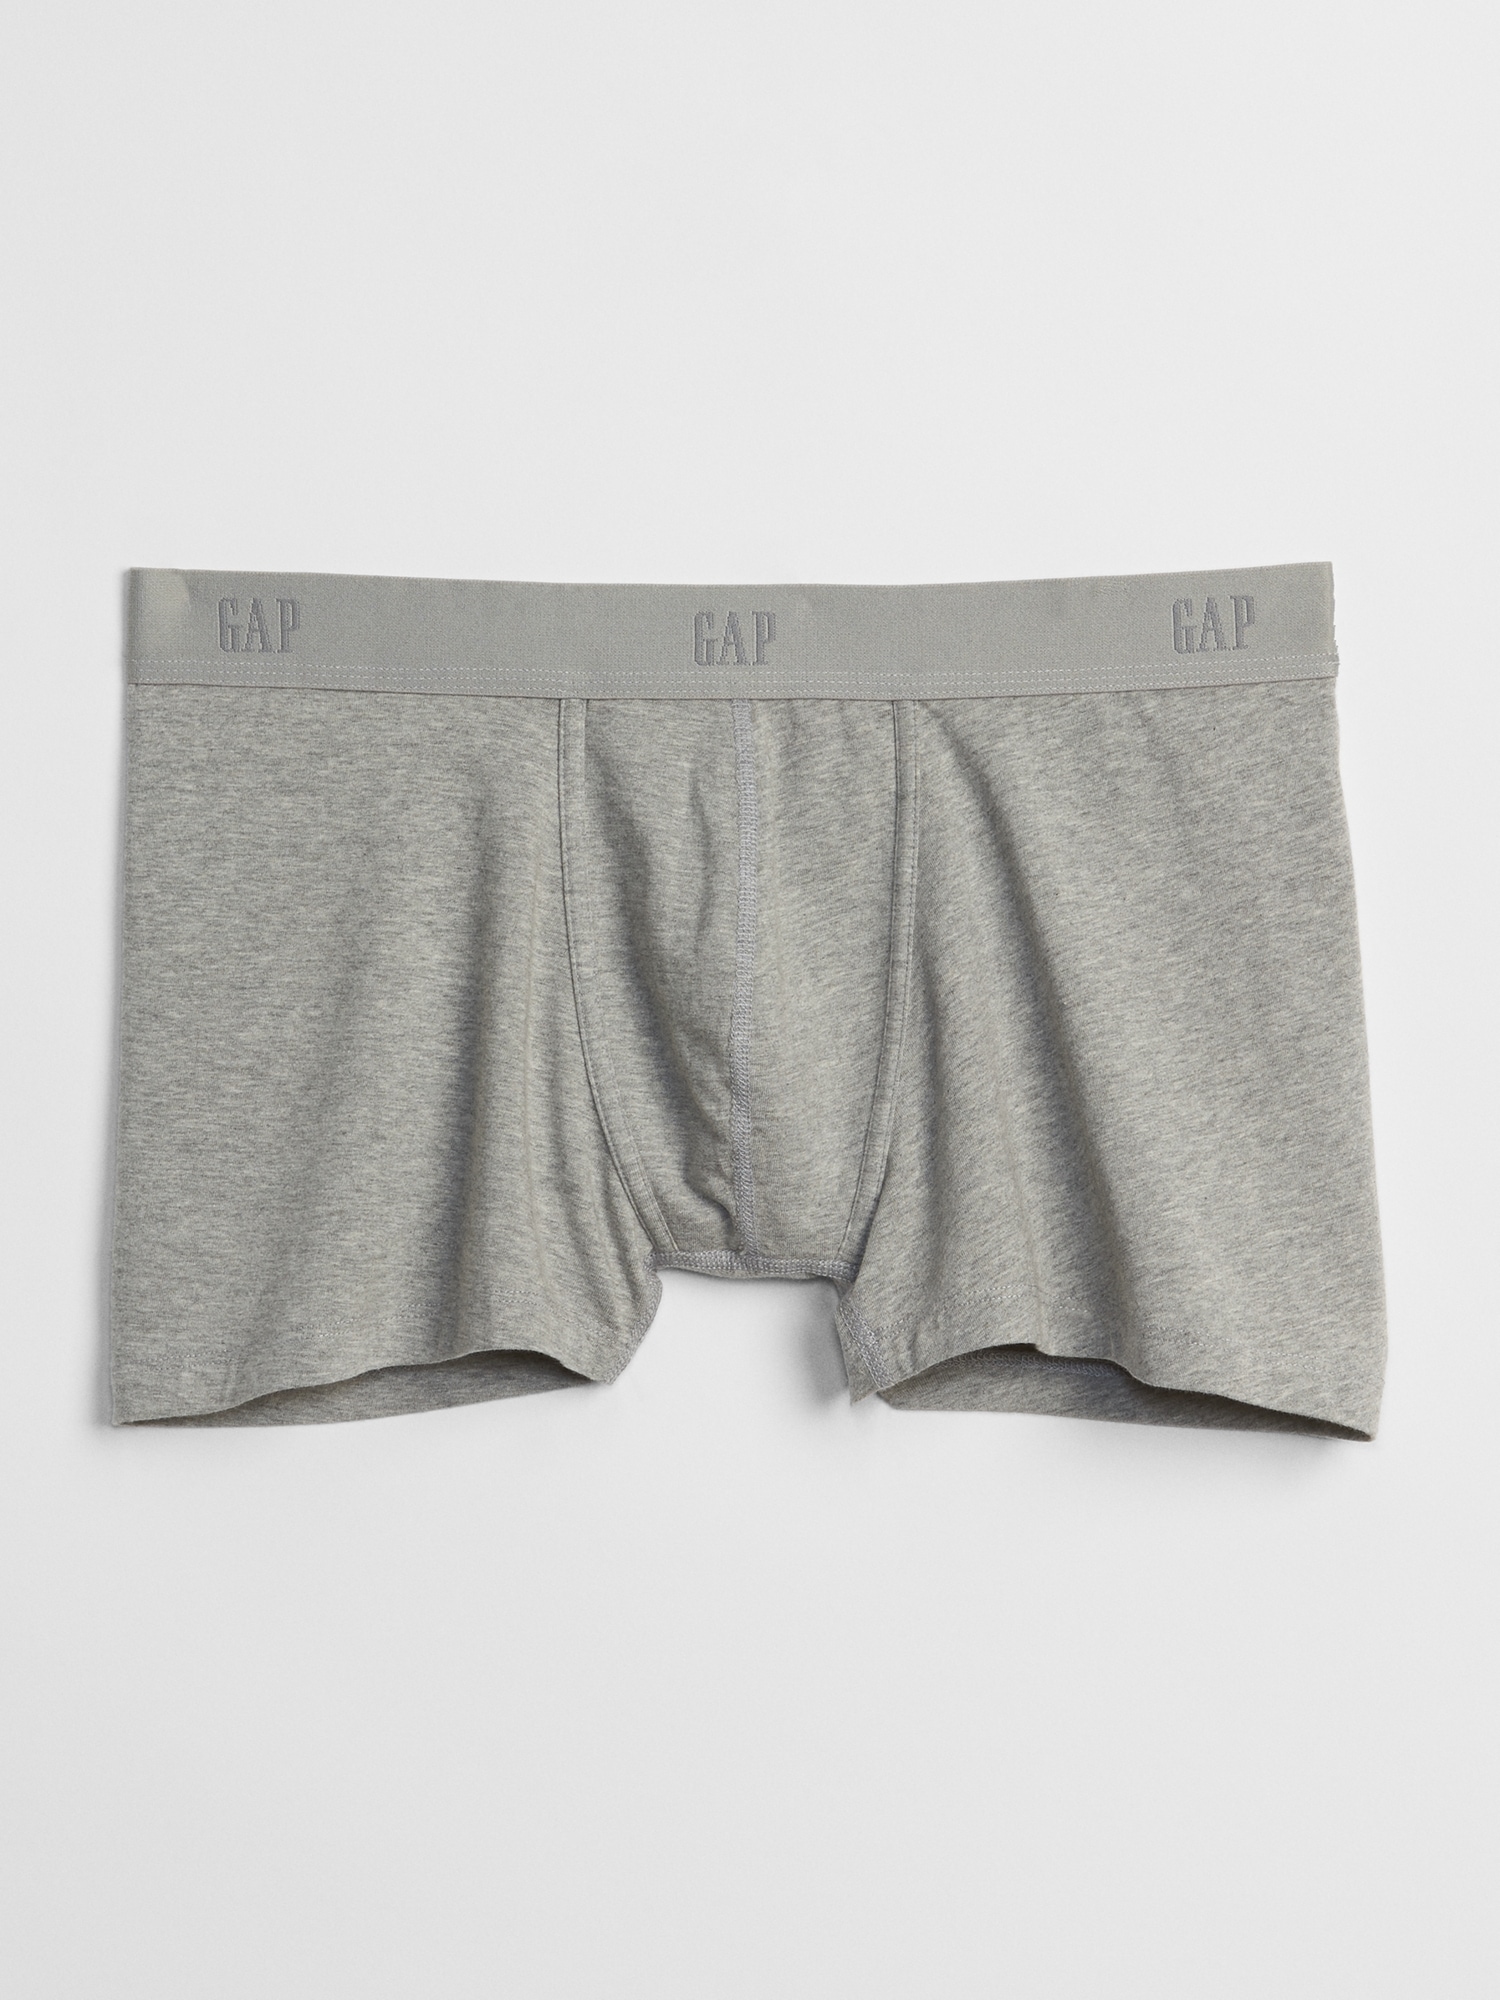 2 PAIR NWT Mens GAP Knit Boxer Briefs Brief Shorts Underwear XL 38-40 *4D